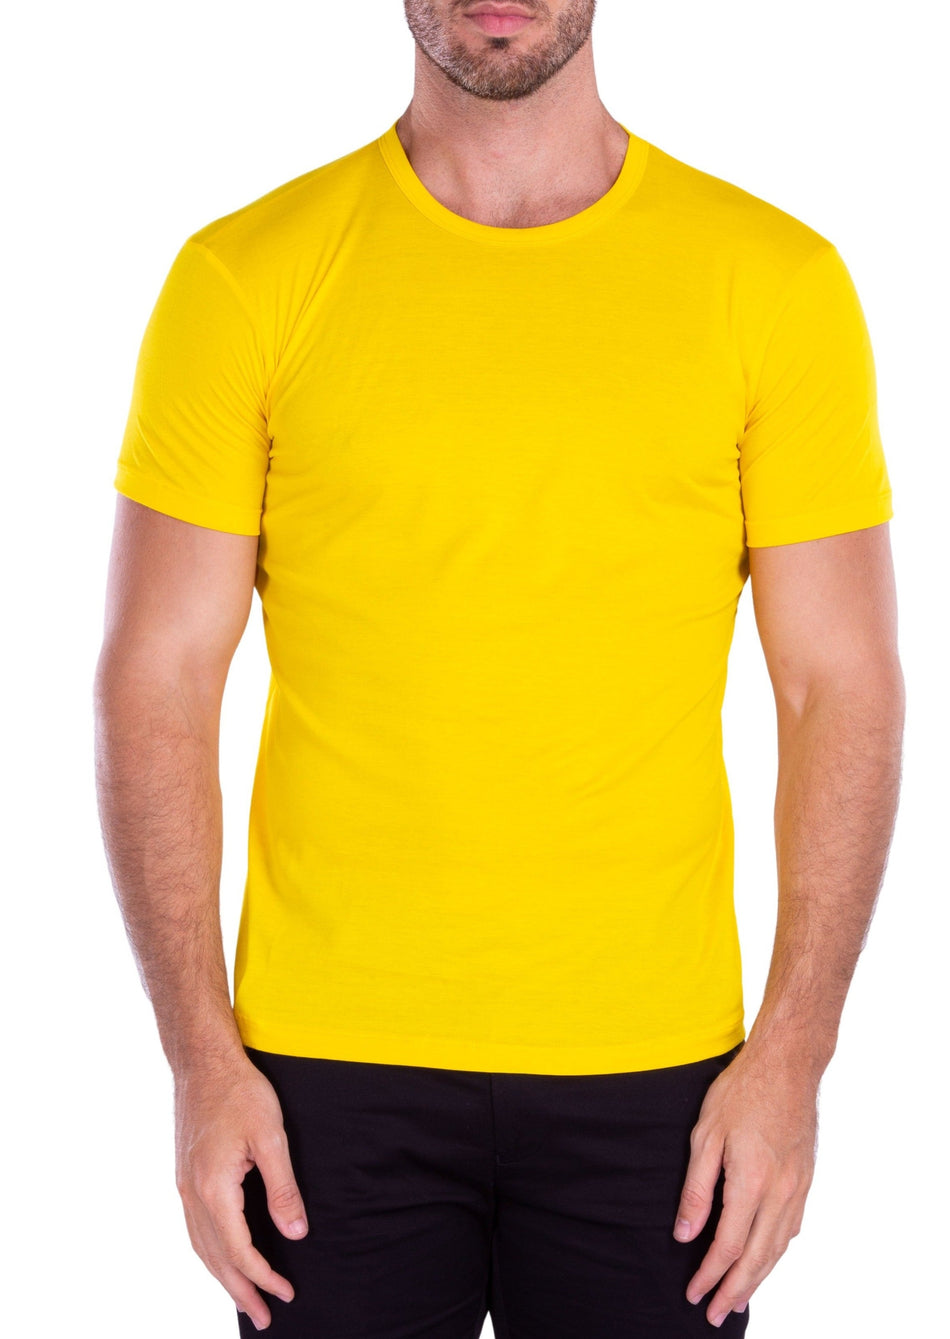 201920 - Yellow Crew Neck T-Shirt